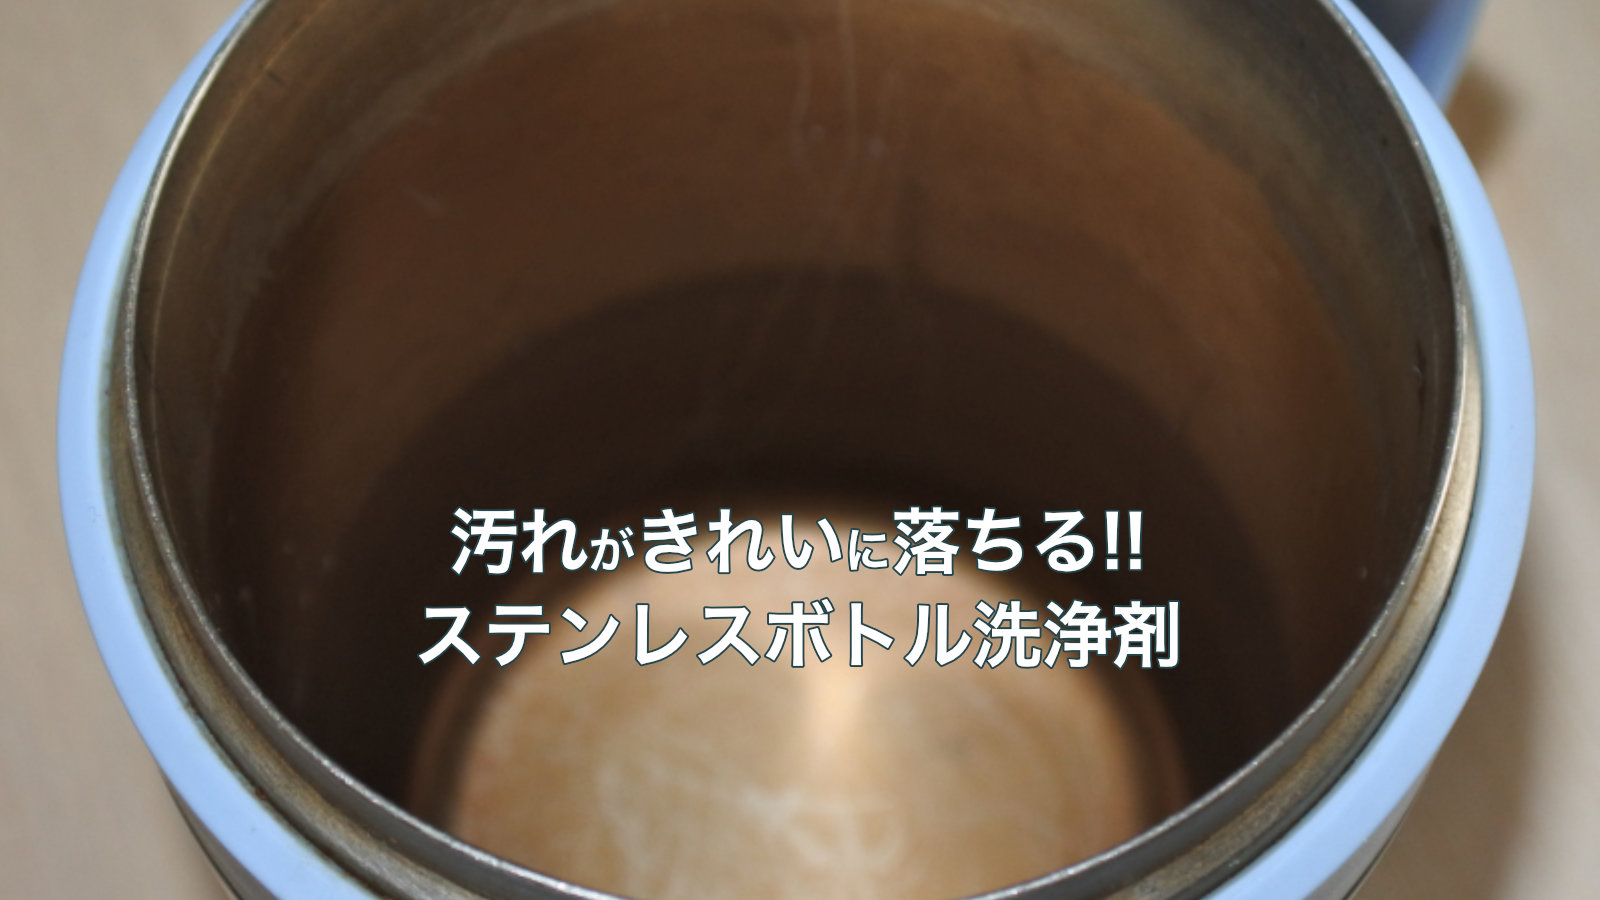 マグカップの全く落ちない茶渋の汚れを薬剤を使って簡単に洗って落とします【やり方】